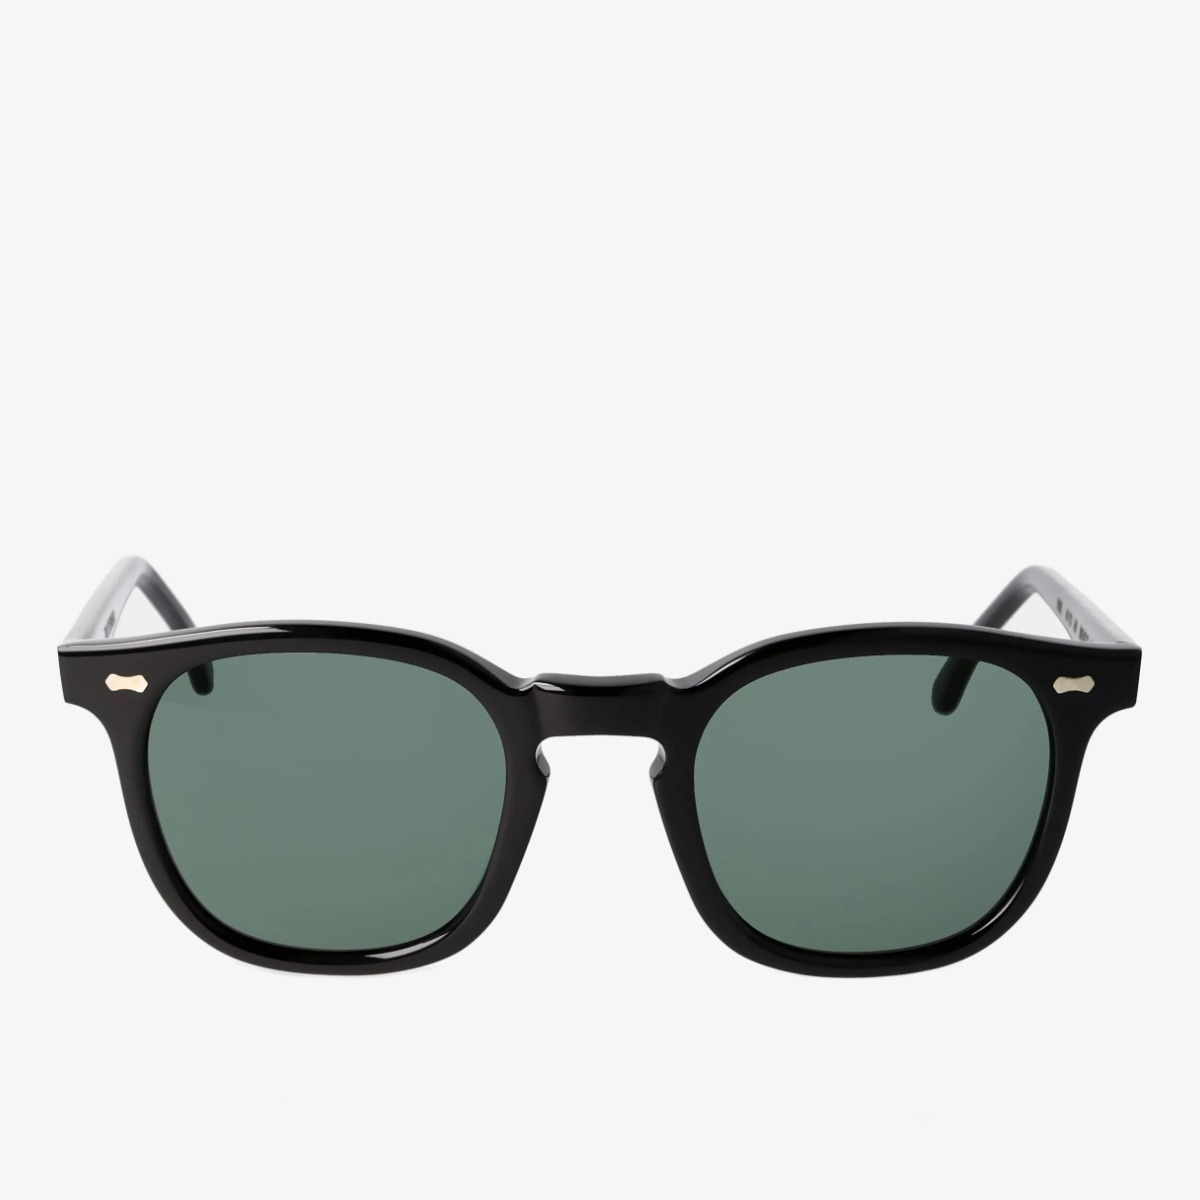 TBD Eyewear Twill saulės akiniai juodais rėmeliais ir žaliais lęšiais